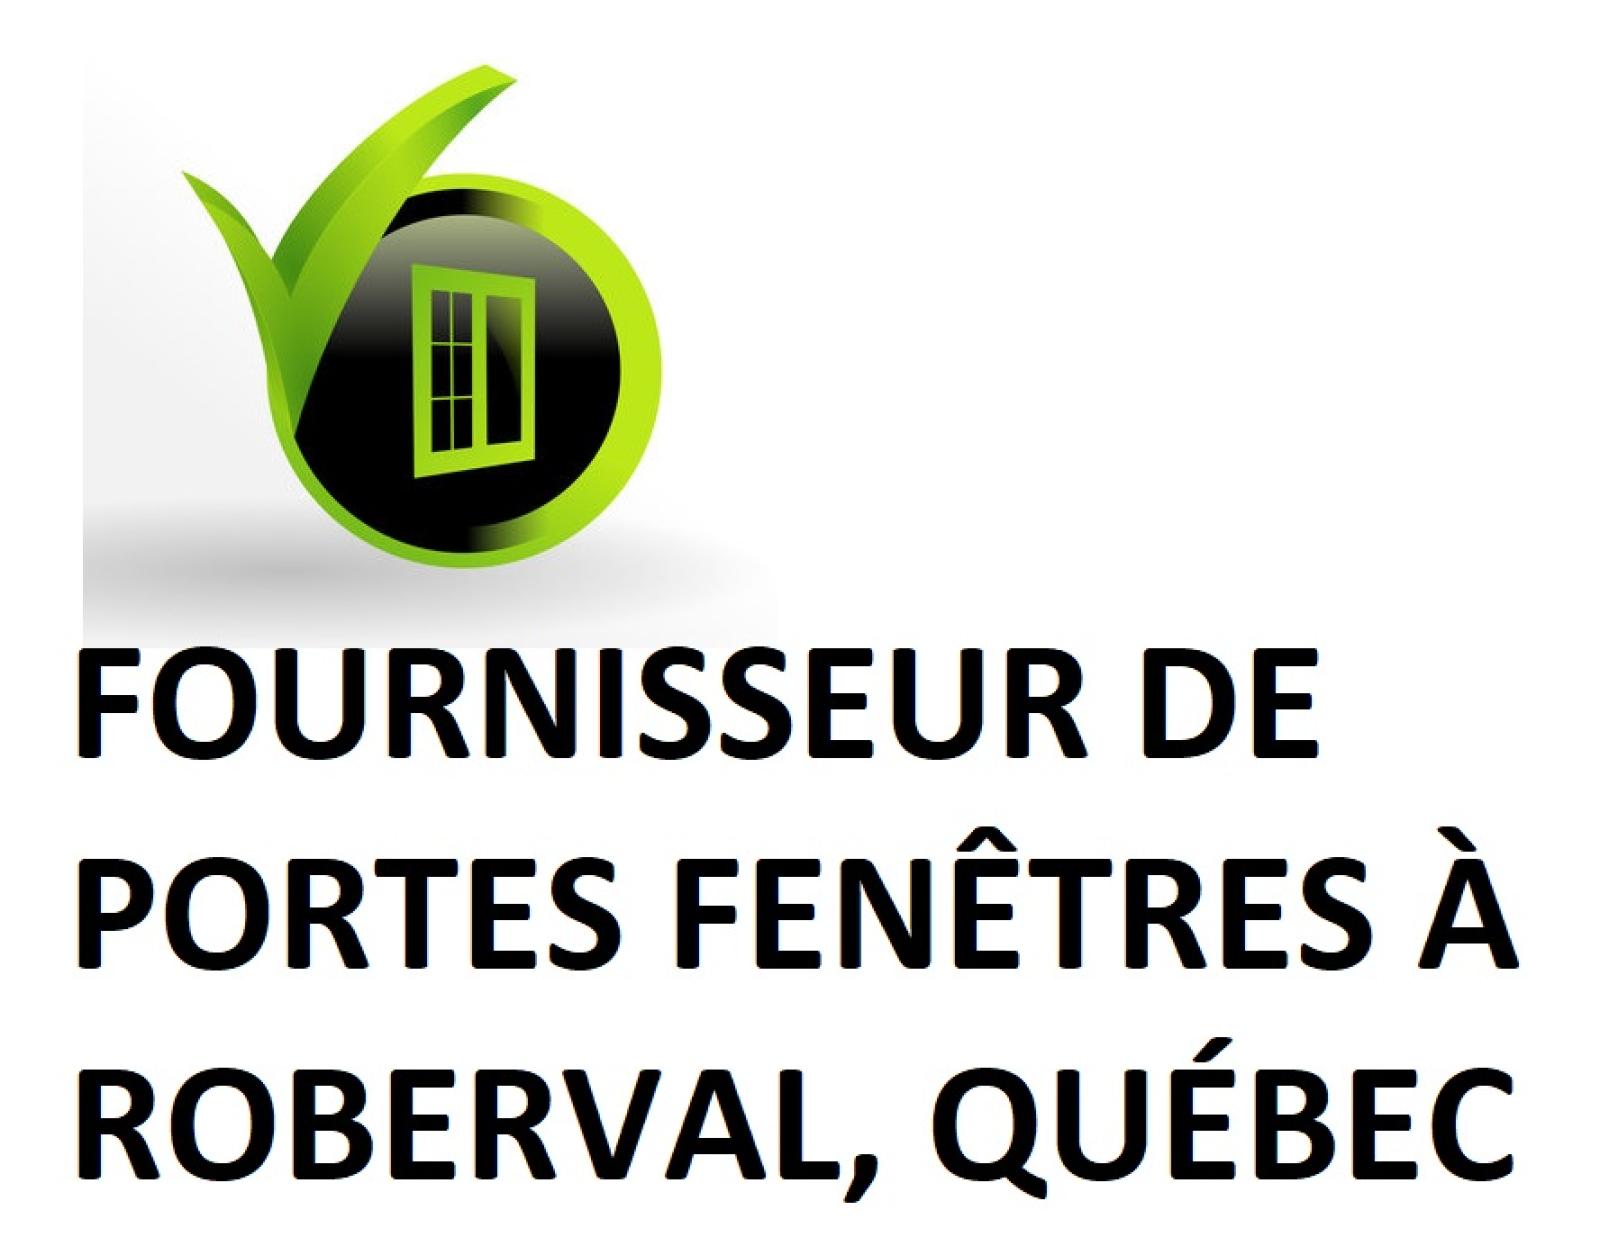 Fournisseur de portes fenêtres à Roberval, Québec Logo